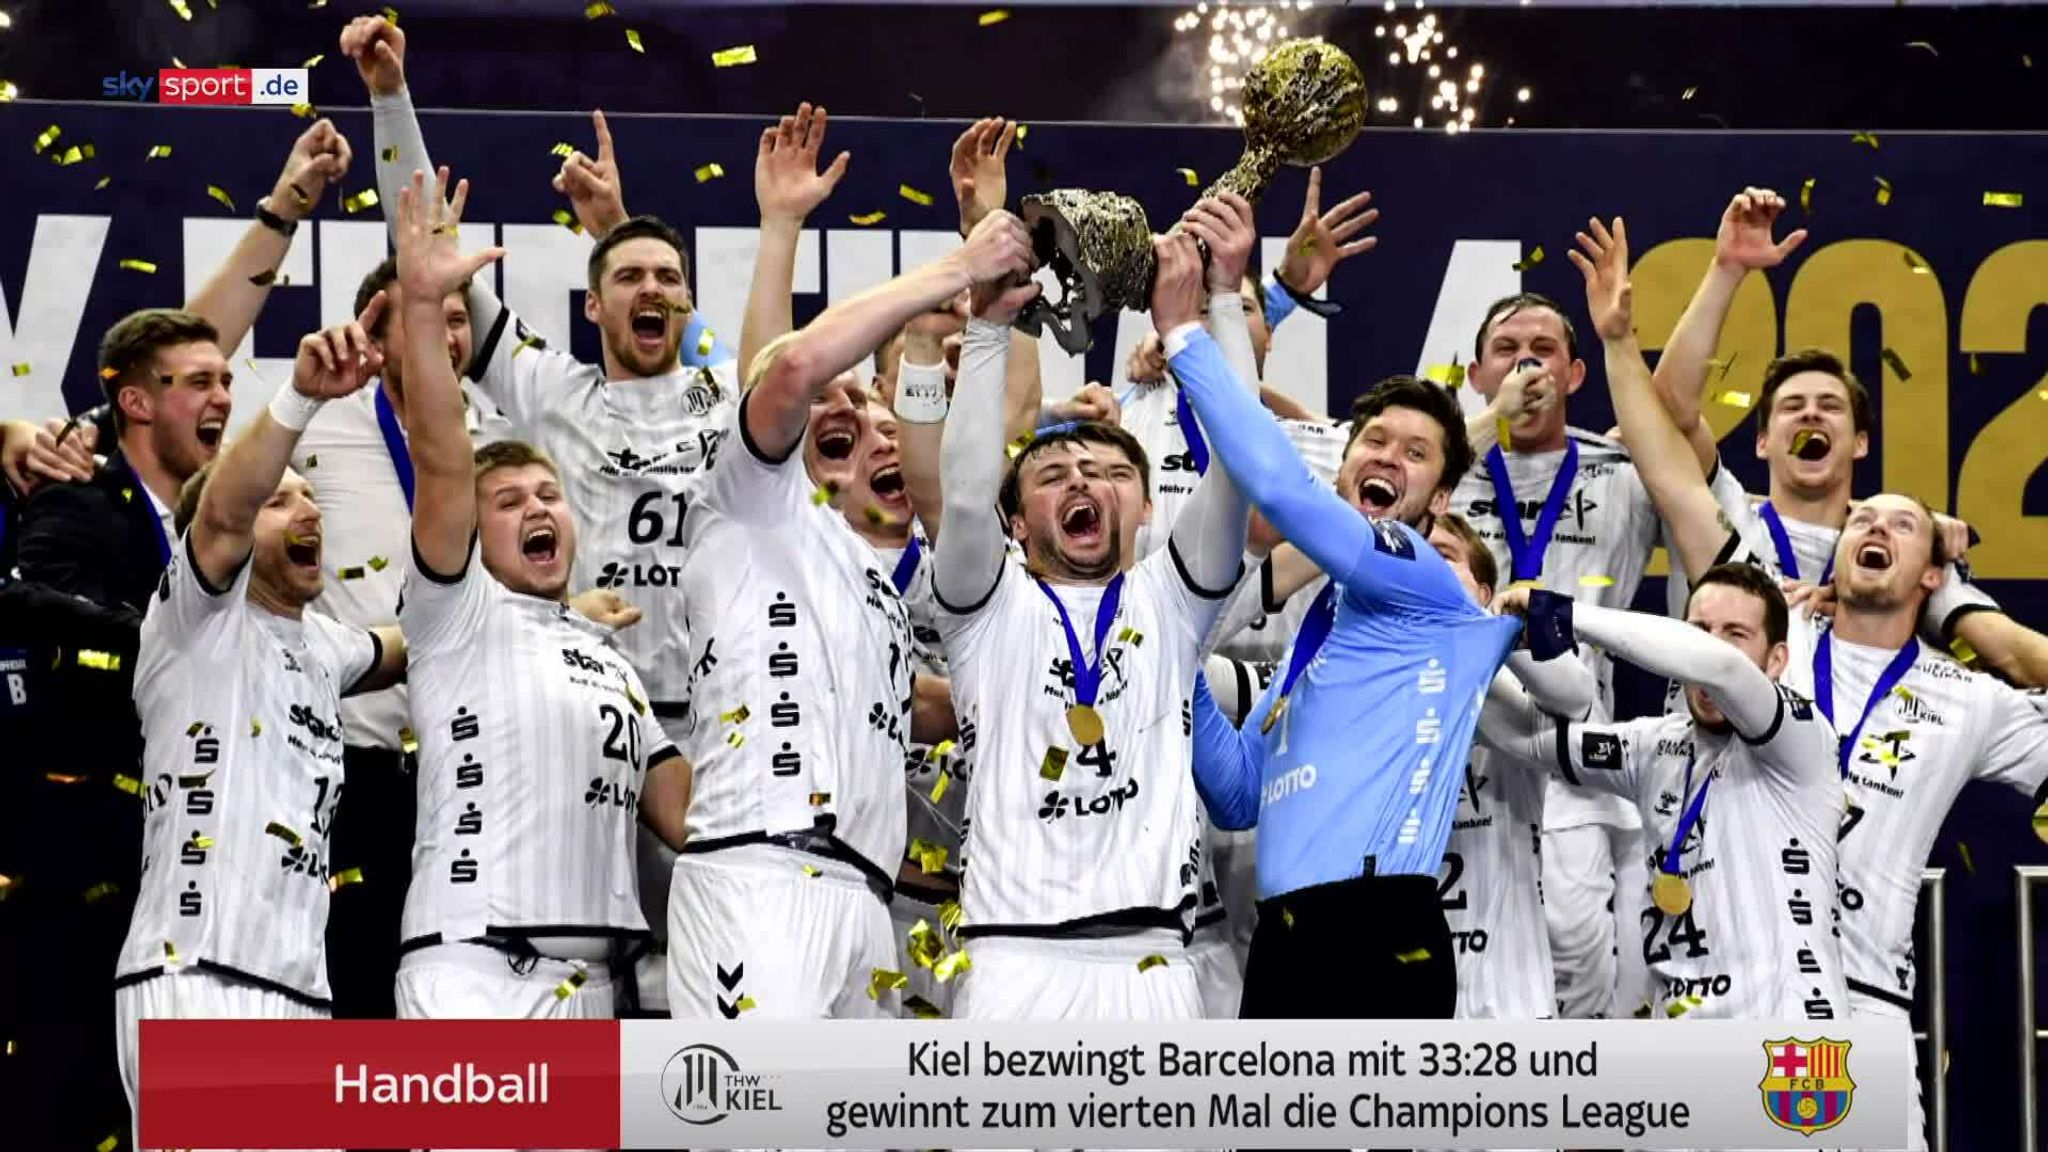 Handball Video Heiner Brand zum Schlüssel des Kieler CL-Erfolgs Handball News Sky Sport